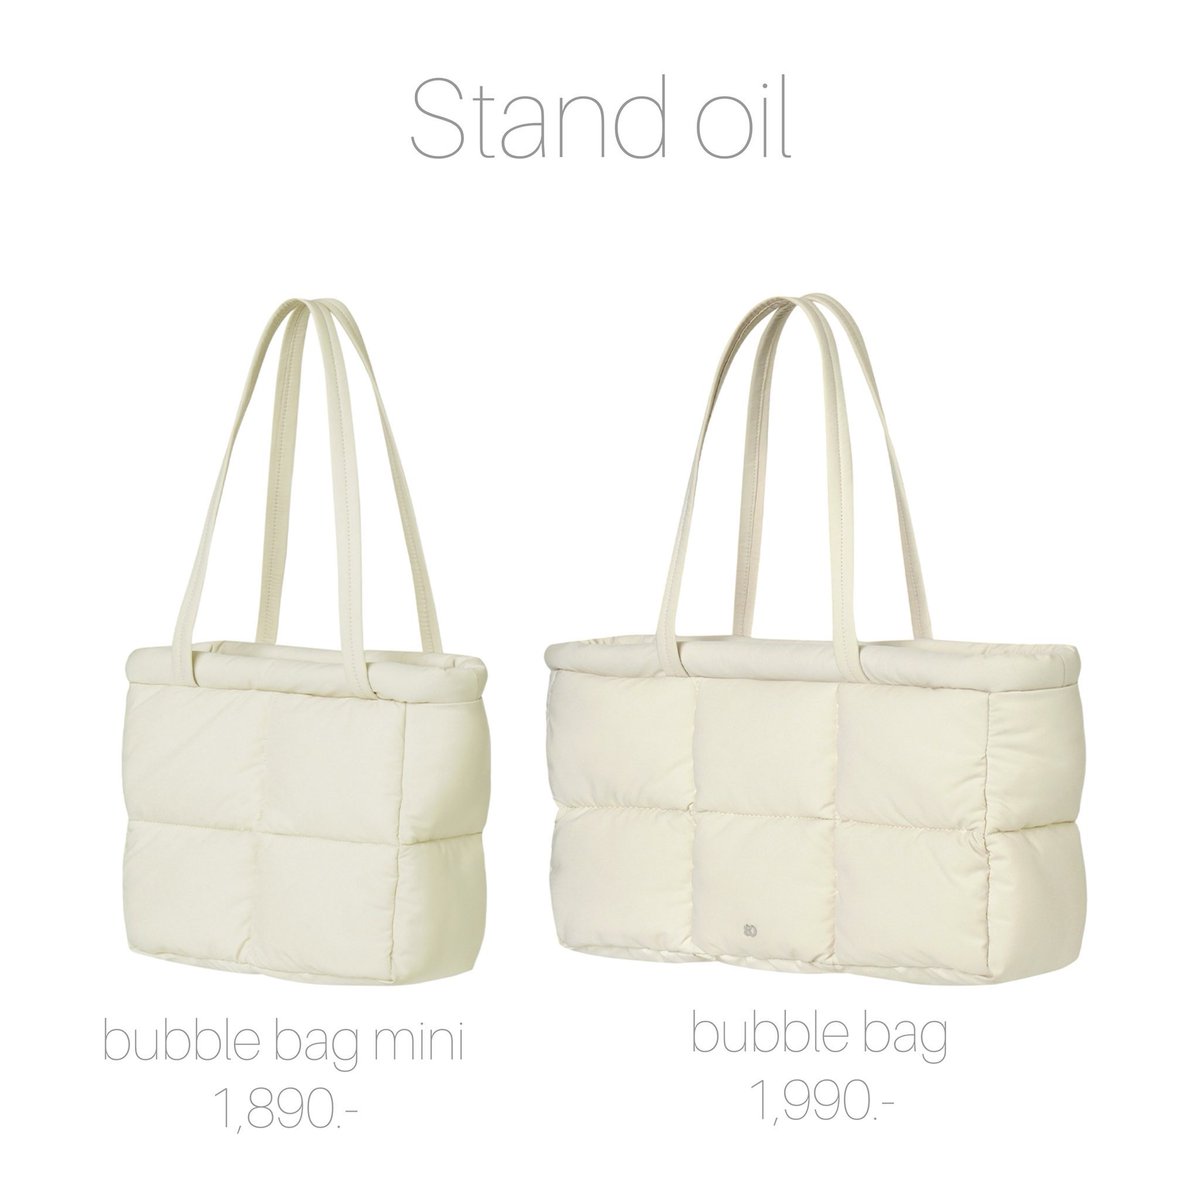 พรีออเดอร์
กระเป๋า #standoil
สีครีม
- Bubble Bag mini    1,890บาท
- Bubble bag              1,990บาท

ค่าส่งในไทย 70บาท
มัดจำได้1,000

🛳️ส่งกลับเรือรอของ15-20วันหลังจากส่งกลับ

#พรีออเดอร์เกาหลี #กระเป๋าเกาหลี   #ตลาดนัดรวว